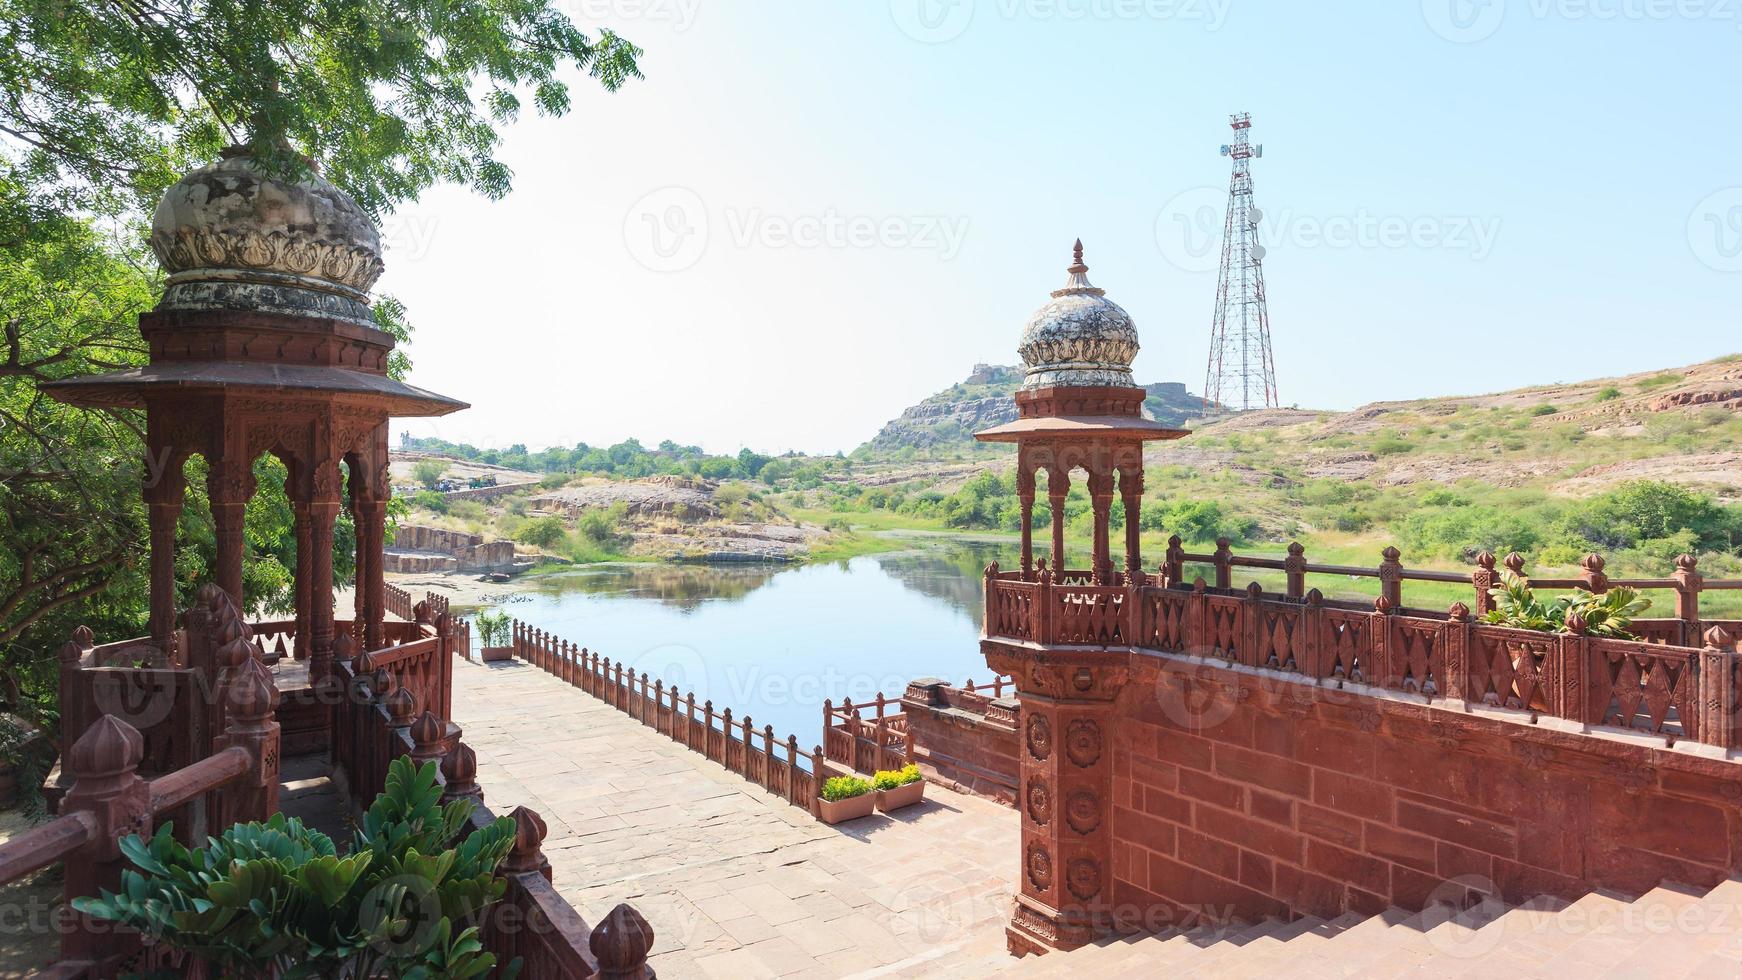 ingang van jaswant tanda mausoleum jodhpur rajasthan india foto